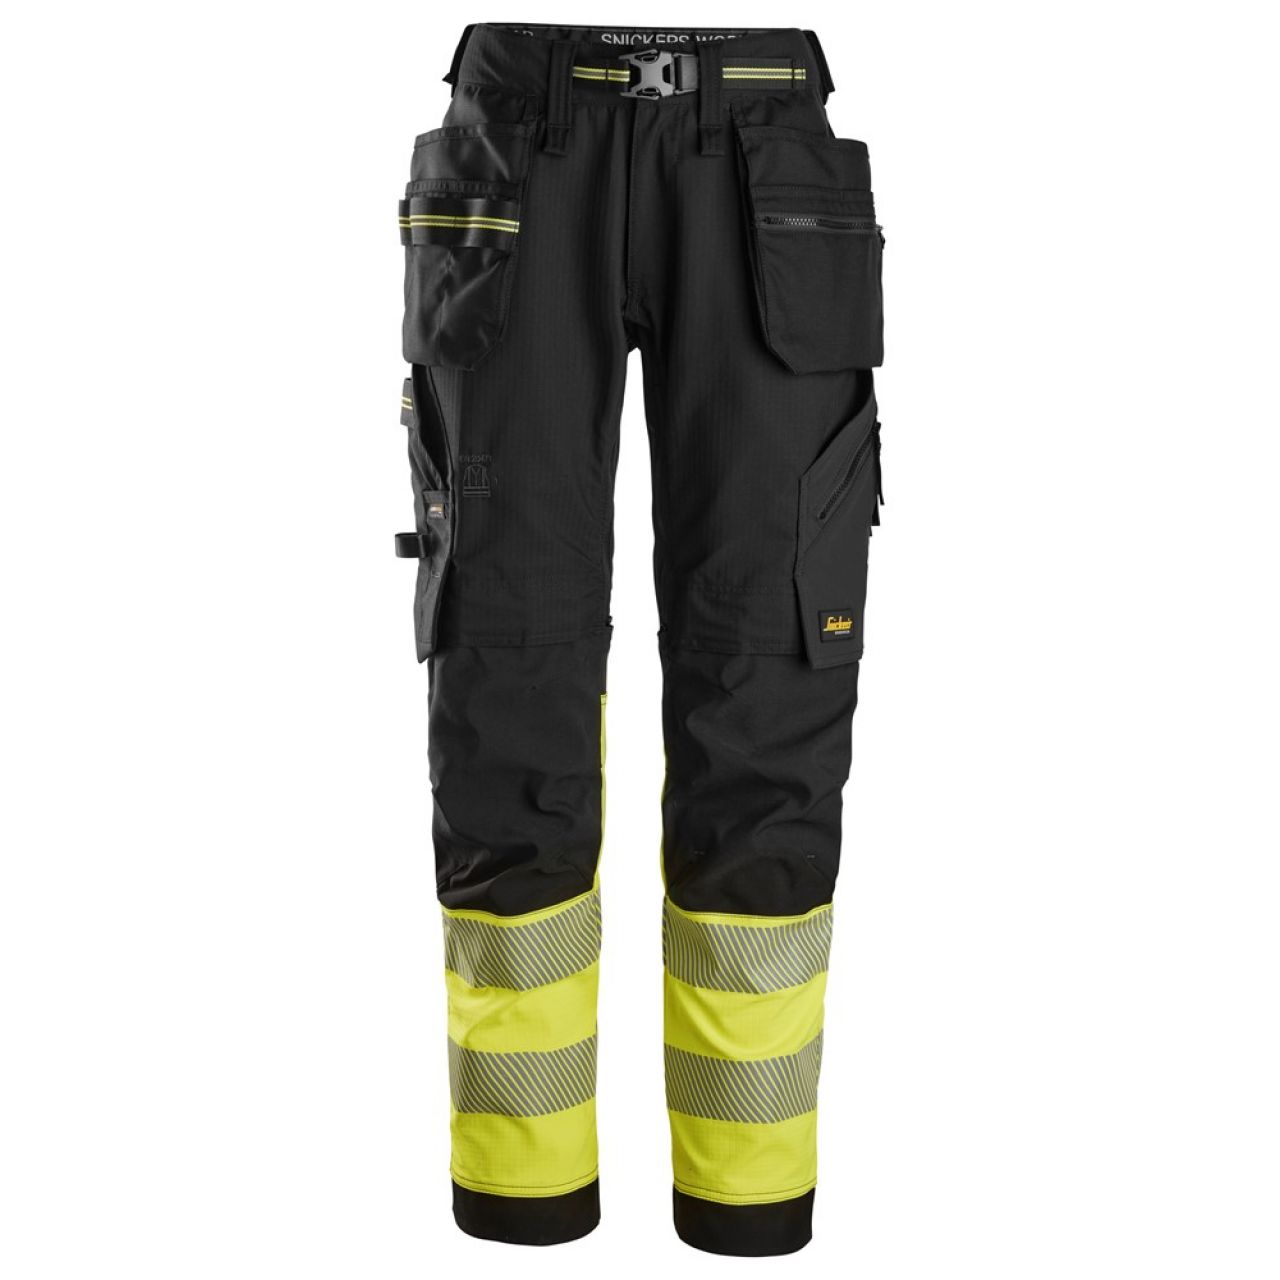 6934 Pantalones largos de trabajo elásticos de alta visibilidad clase 1 con bolsillos flotantes negro-amarillo talla 120